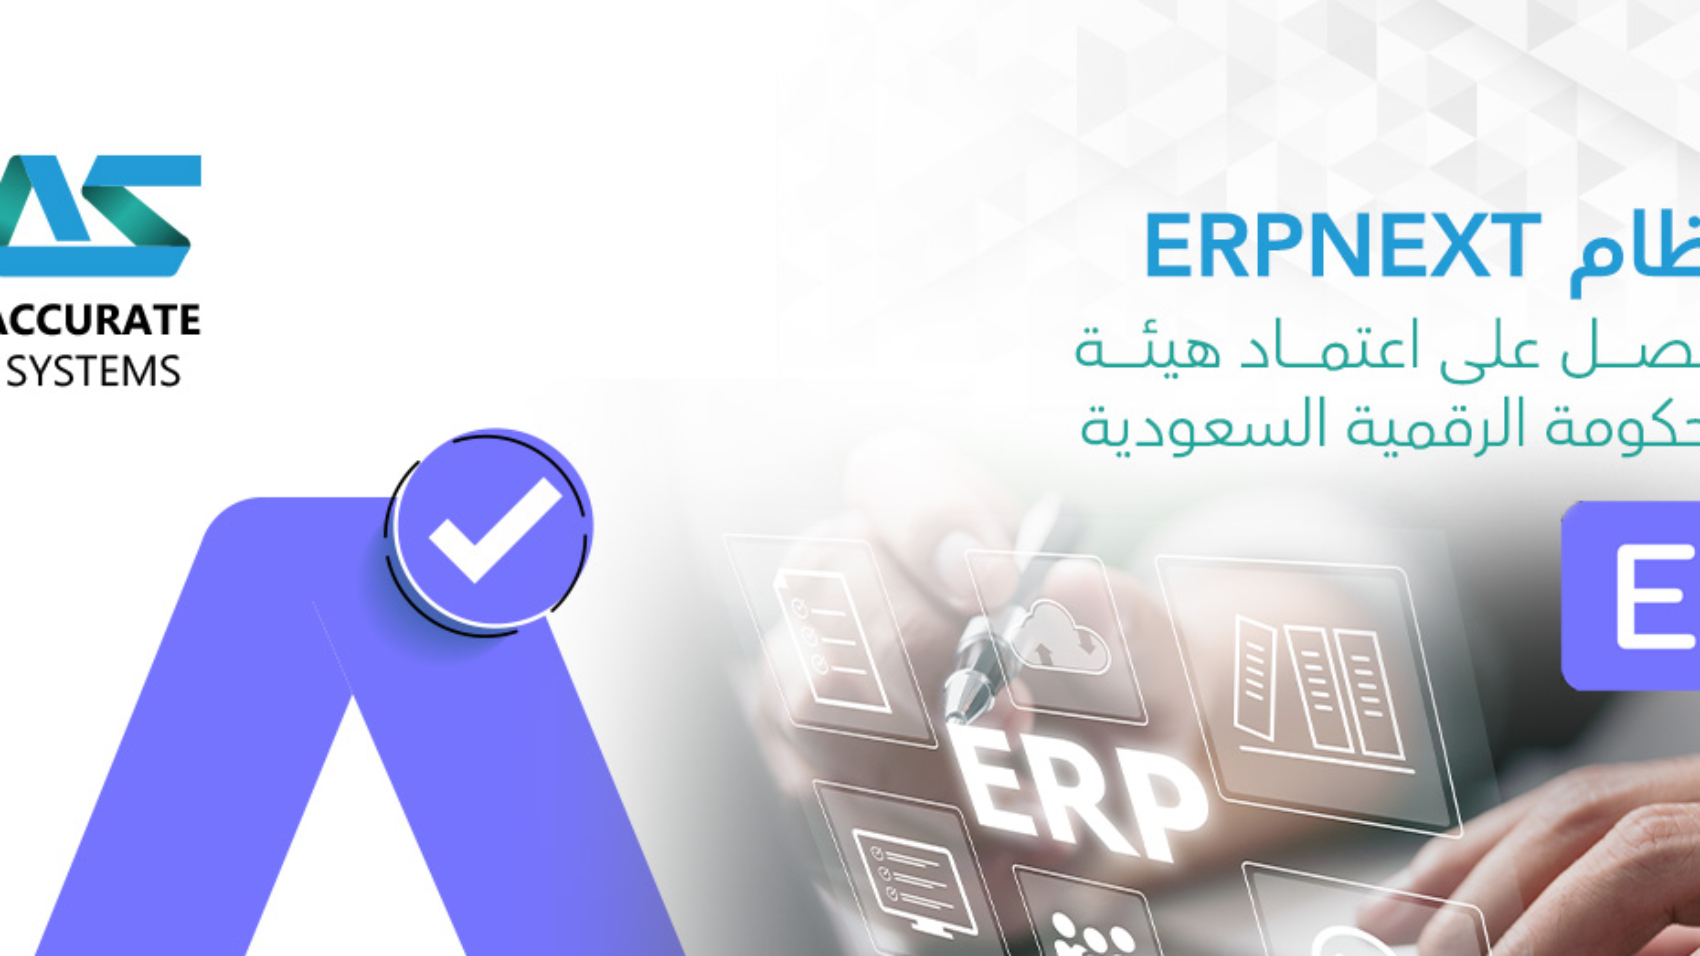 نظام ERPNext يحصل على اعتماد هيئة الحكومة الرقمية السعودية